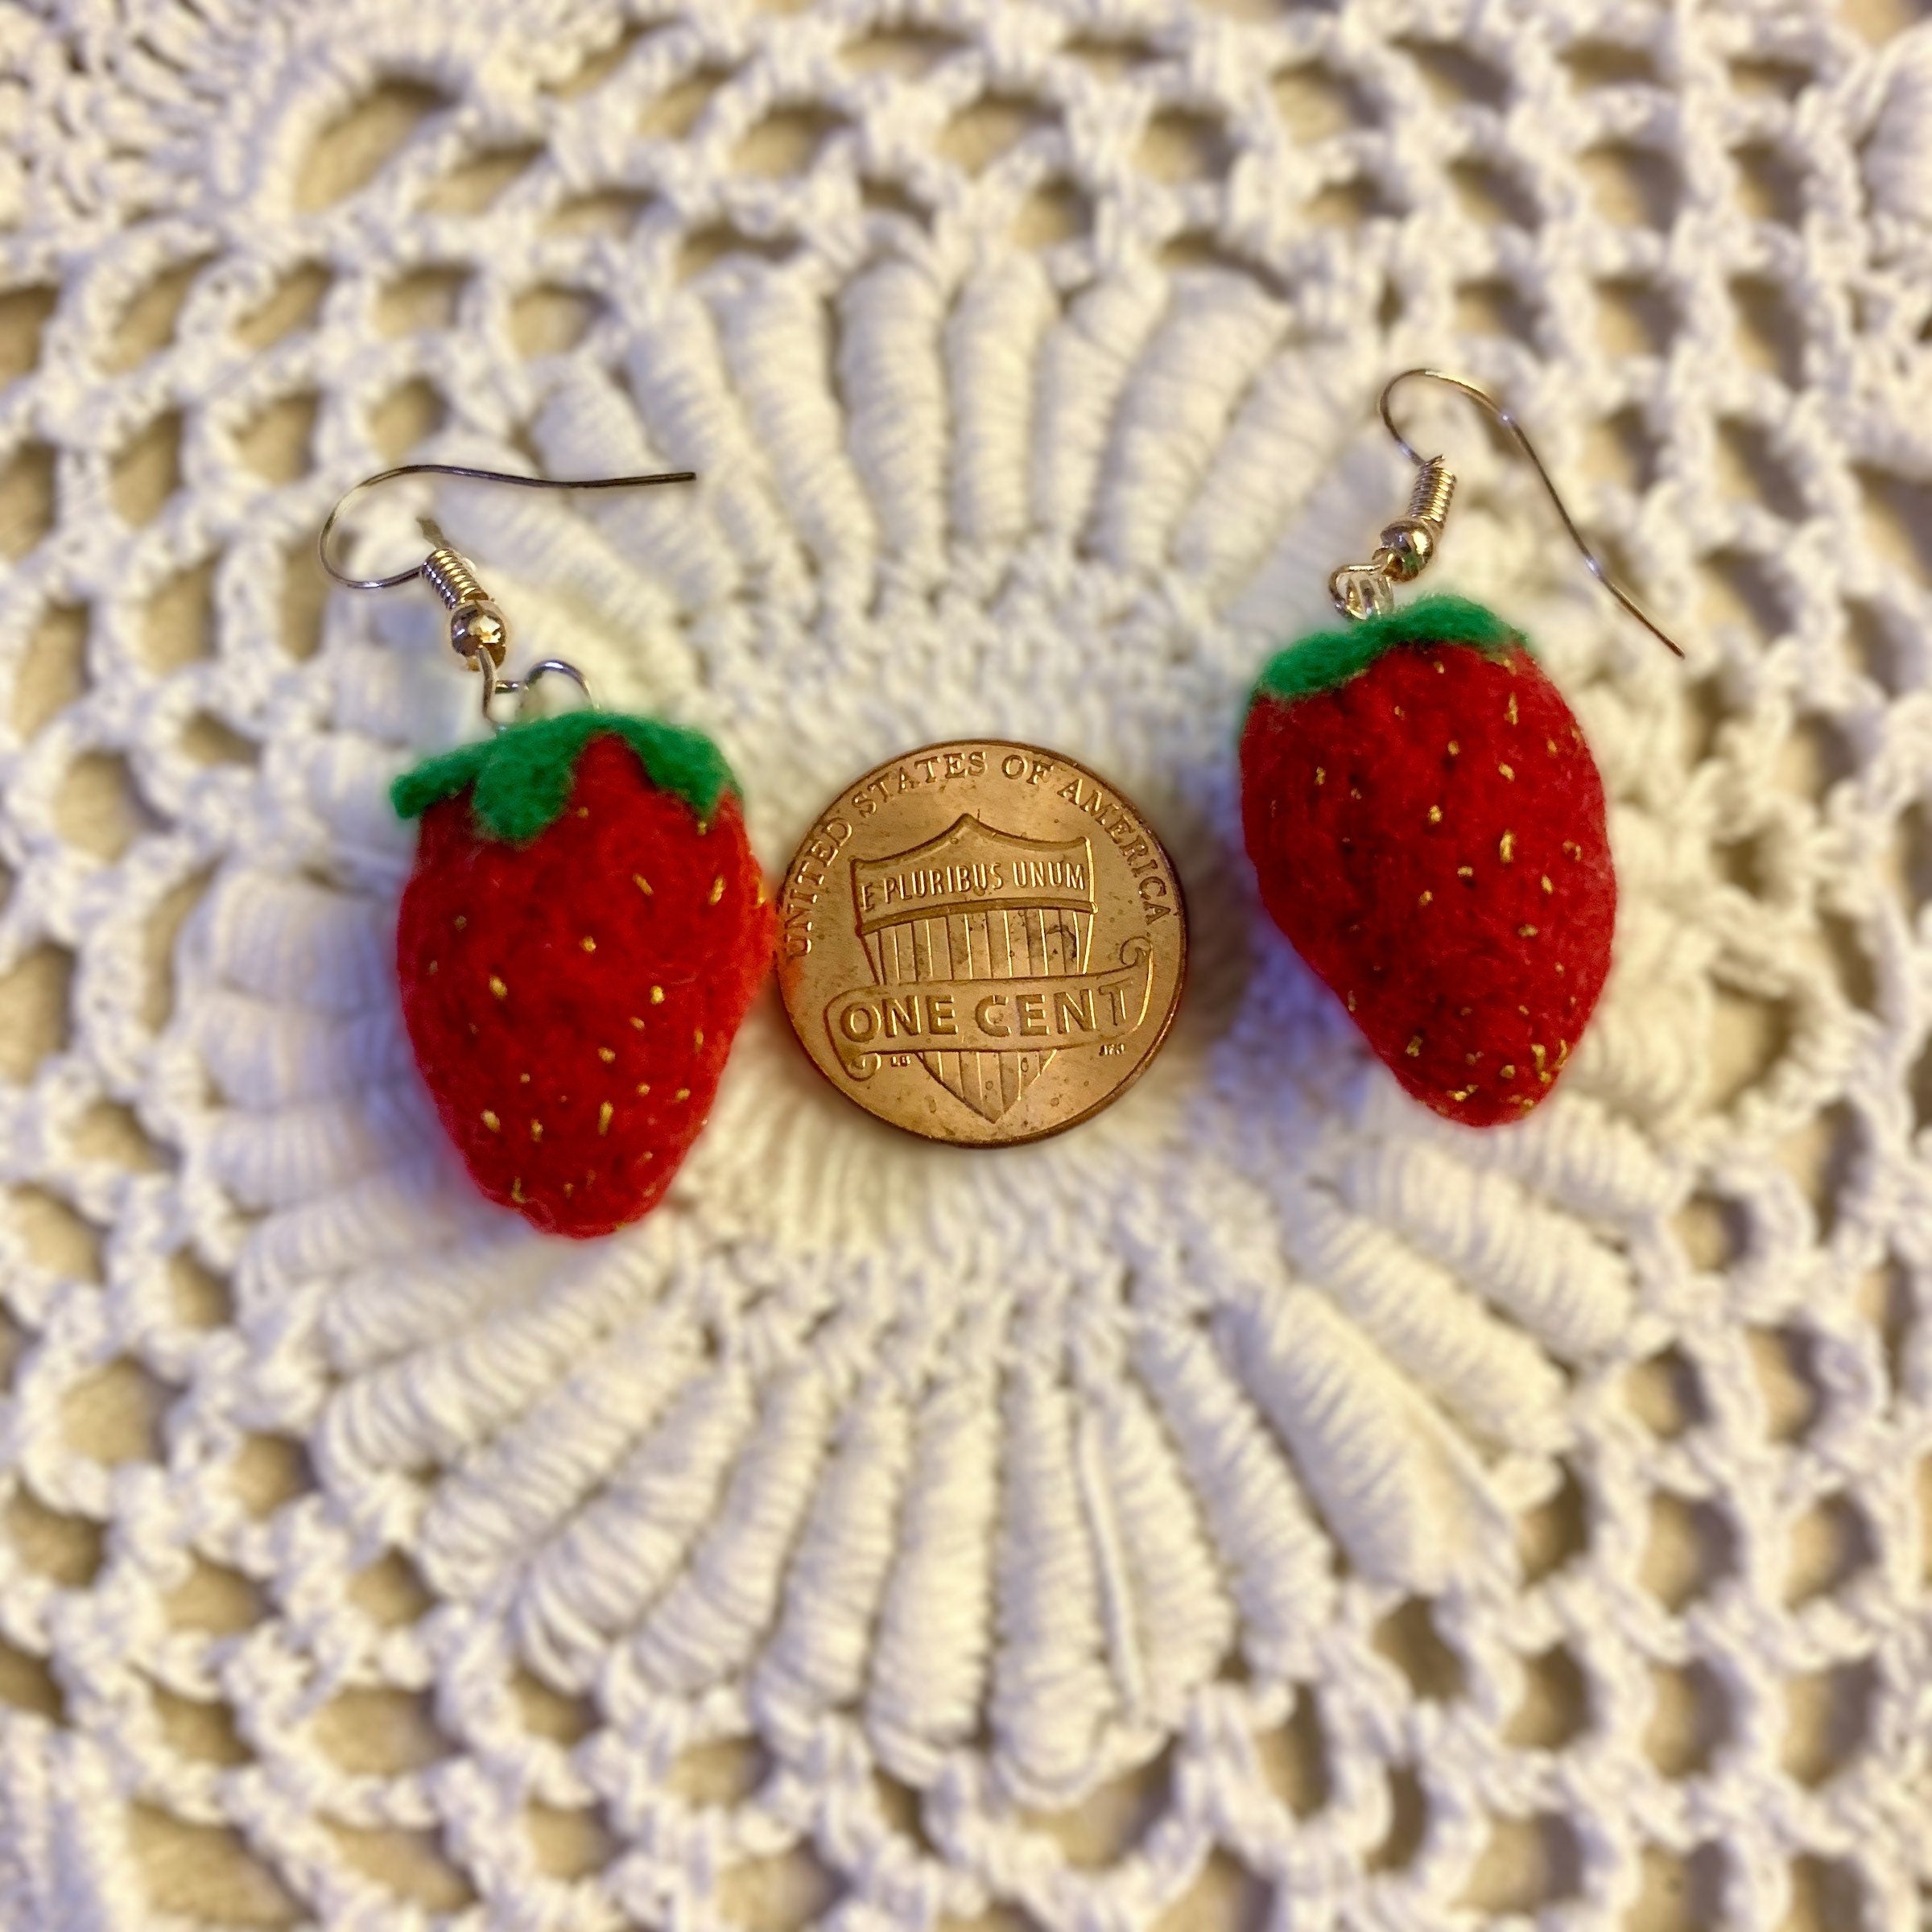 Strawberry Earrings-Needle Felted Earrings made from Merino Wool